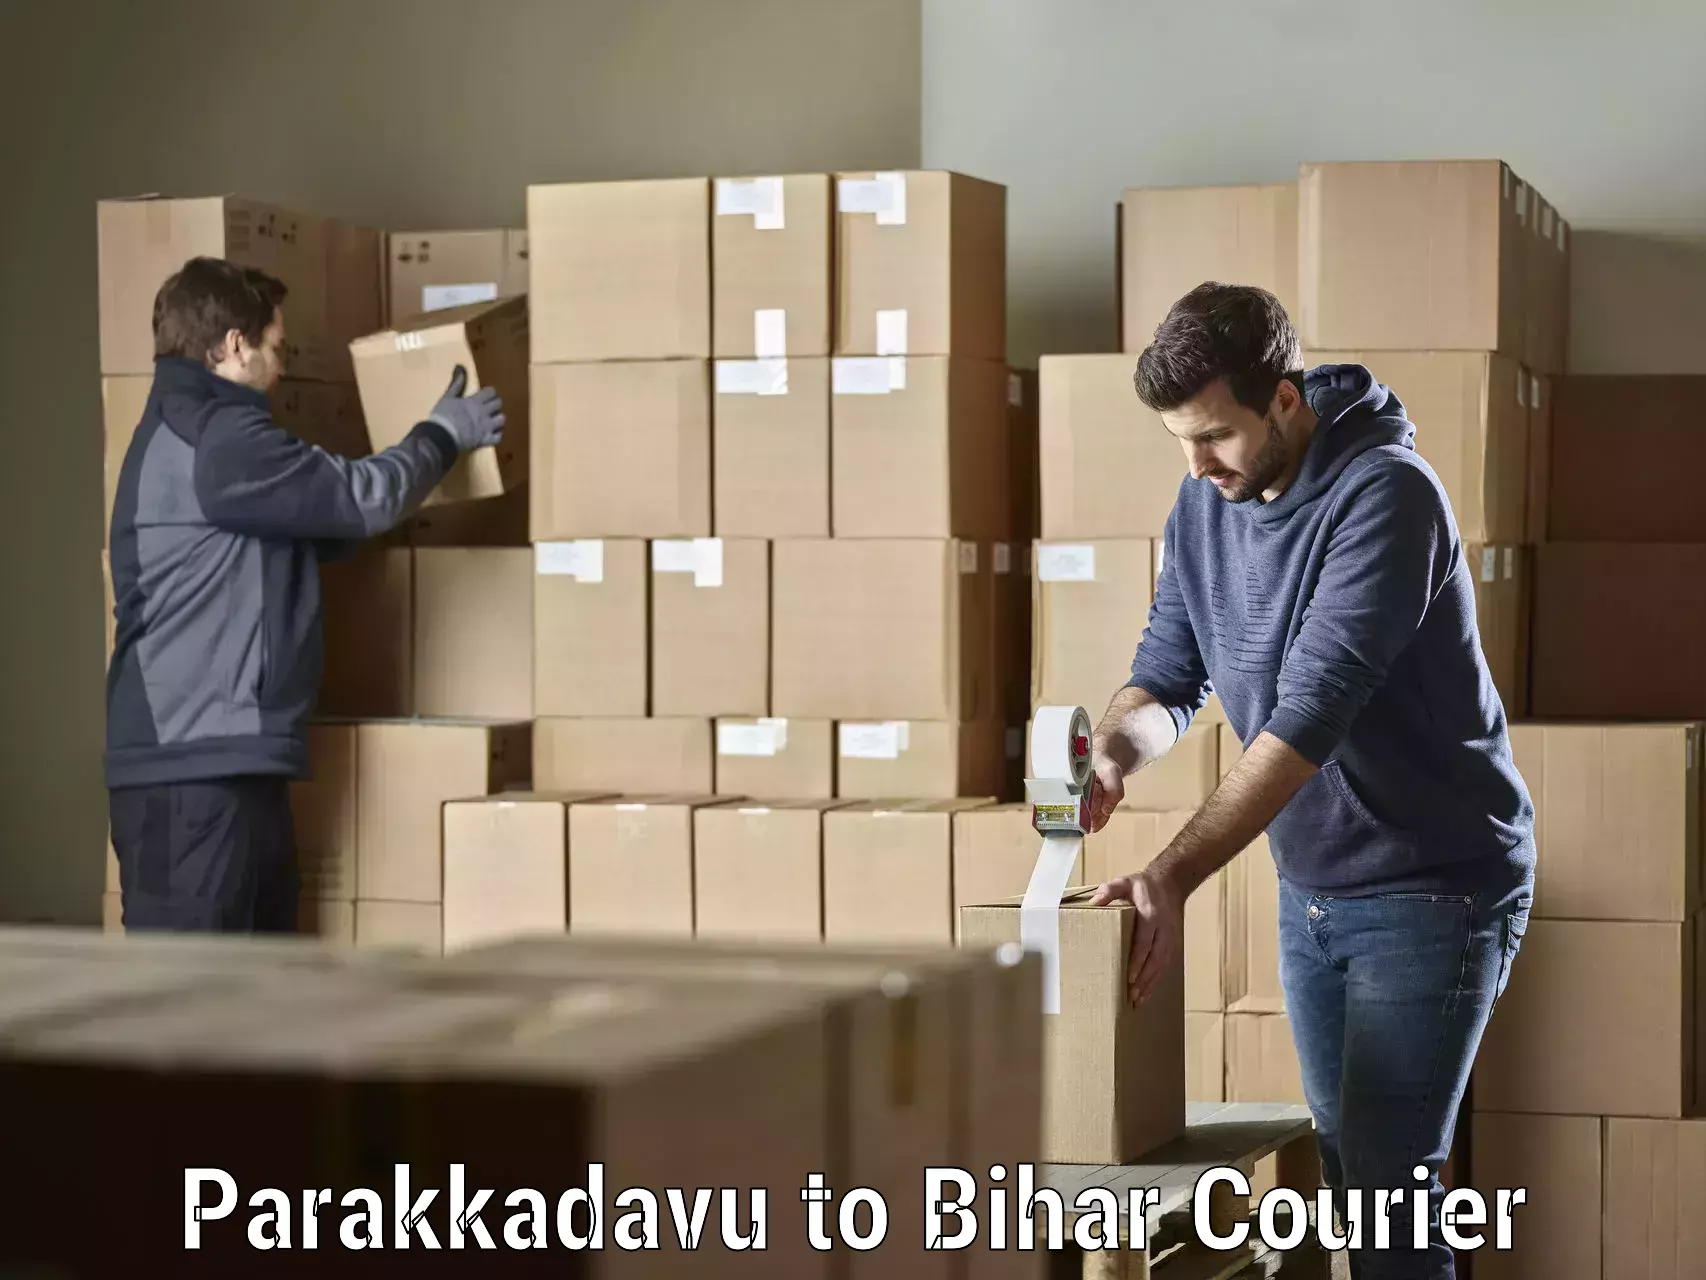 Professional courier services Parakkadavu to Nawada